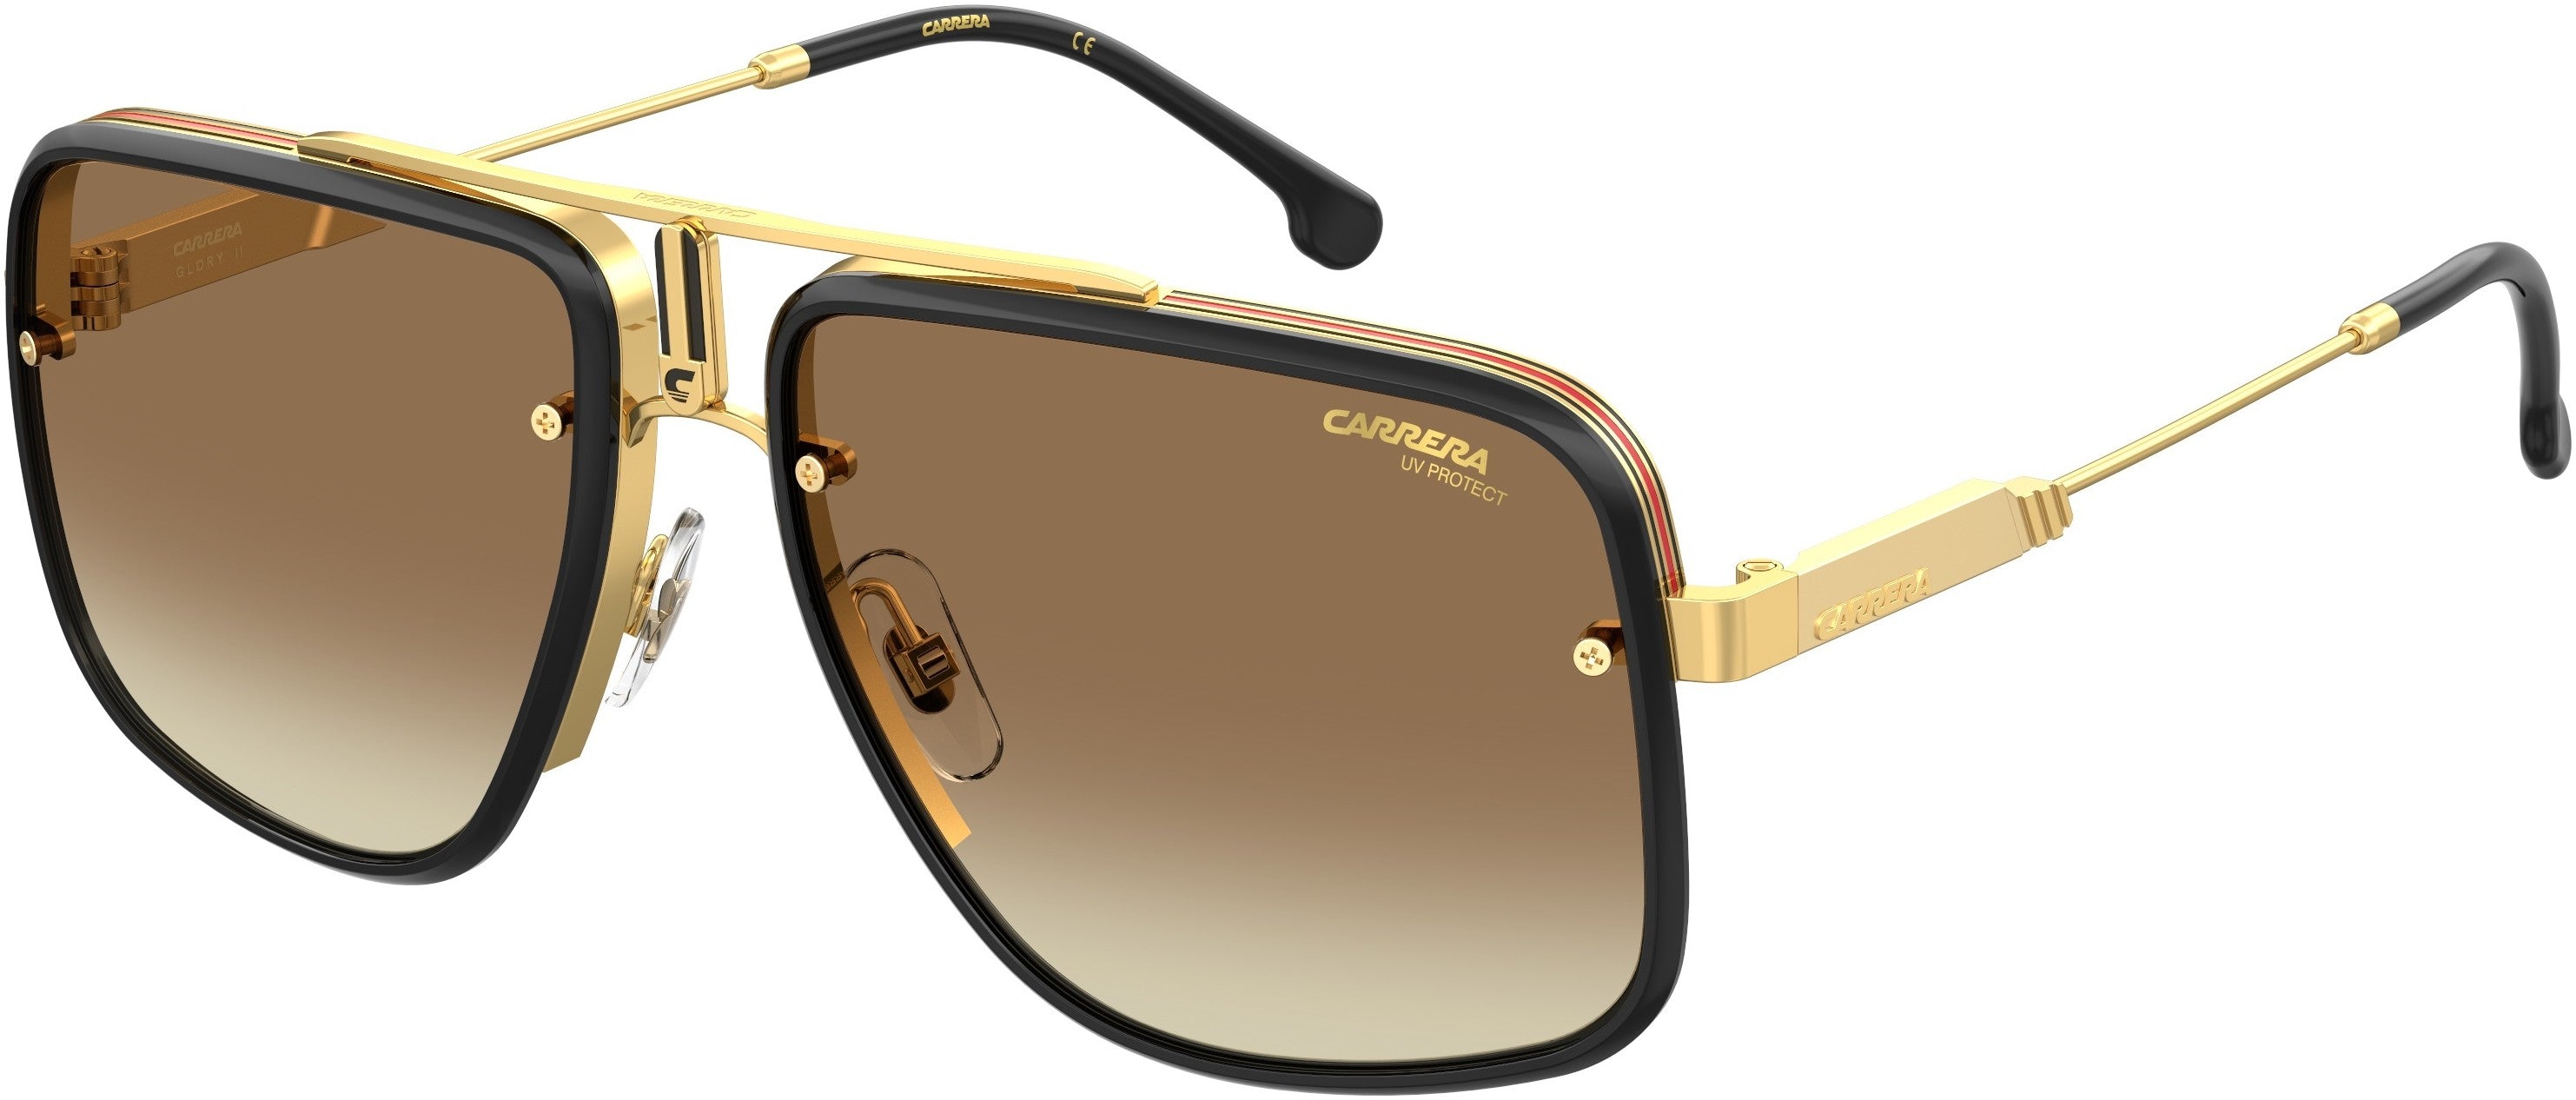  Carrera Glory Ii Rectangular Sunglasses 0001-0001  Yellow Gold (86 Brown Shaded Ar)